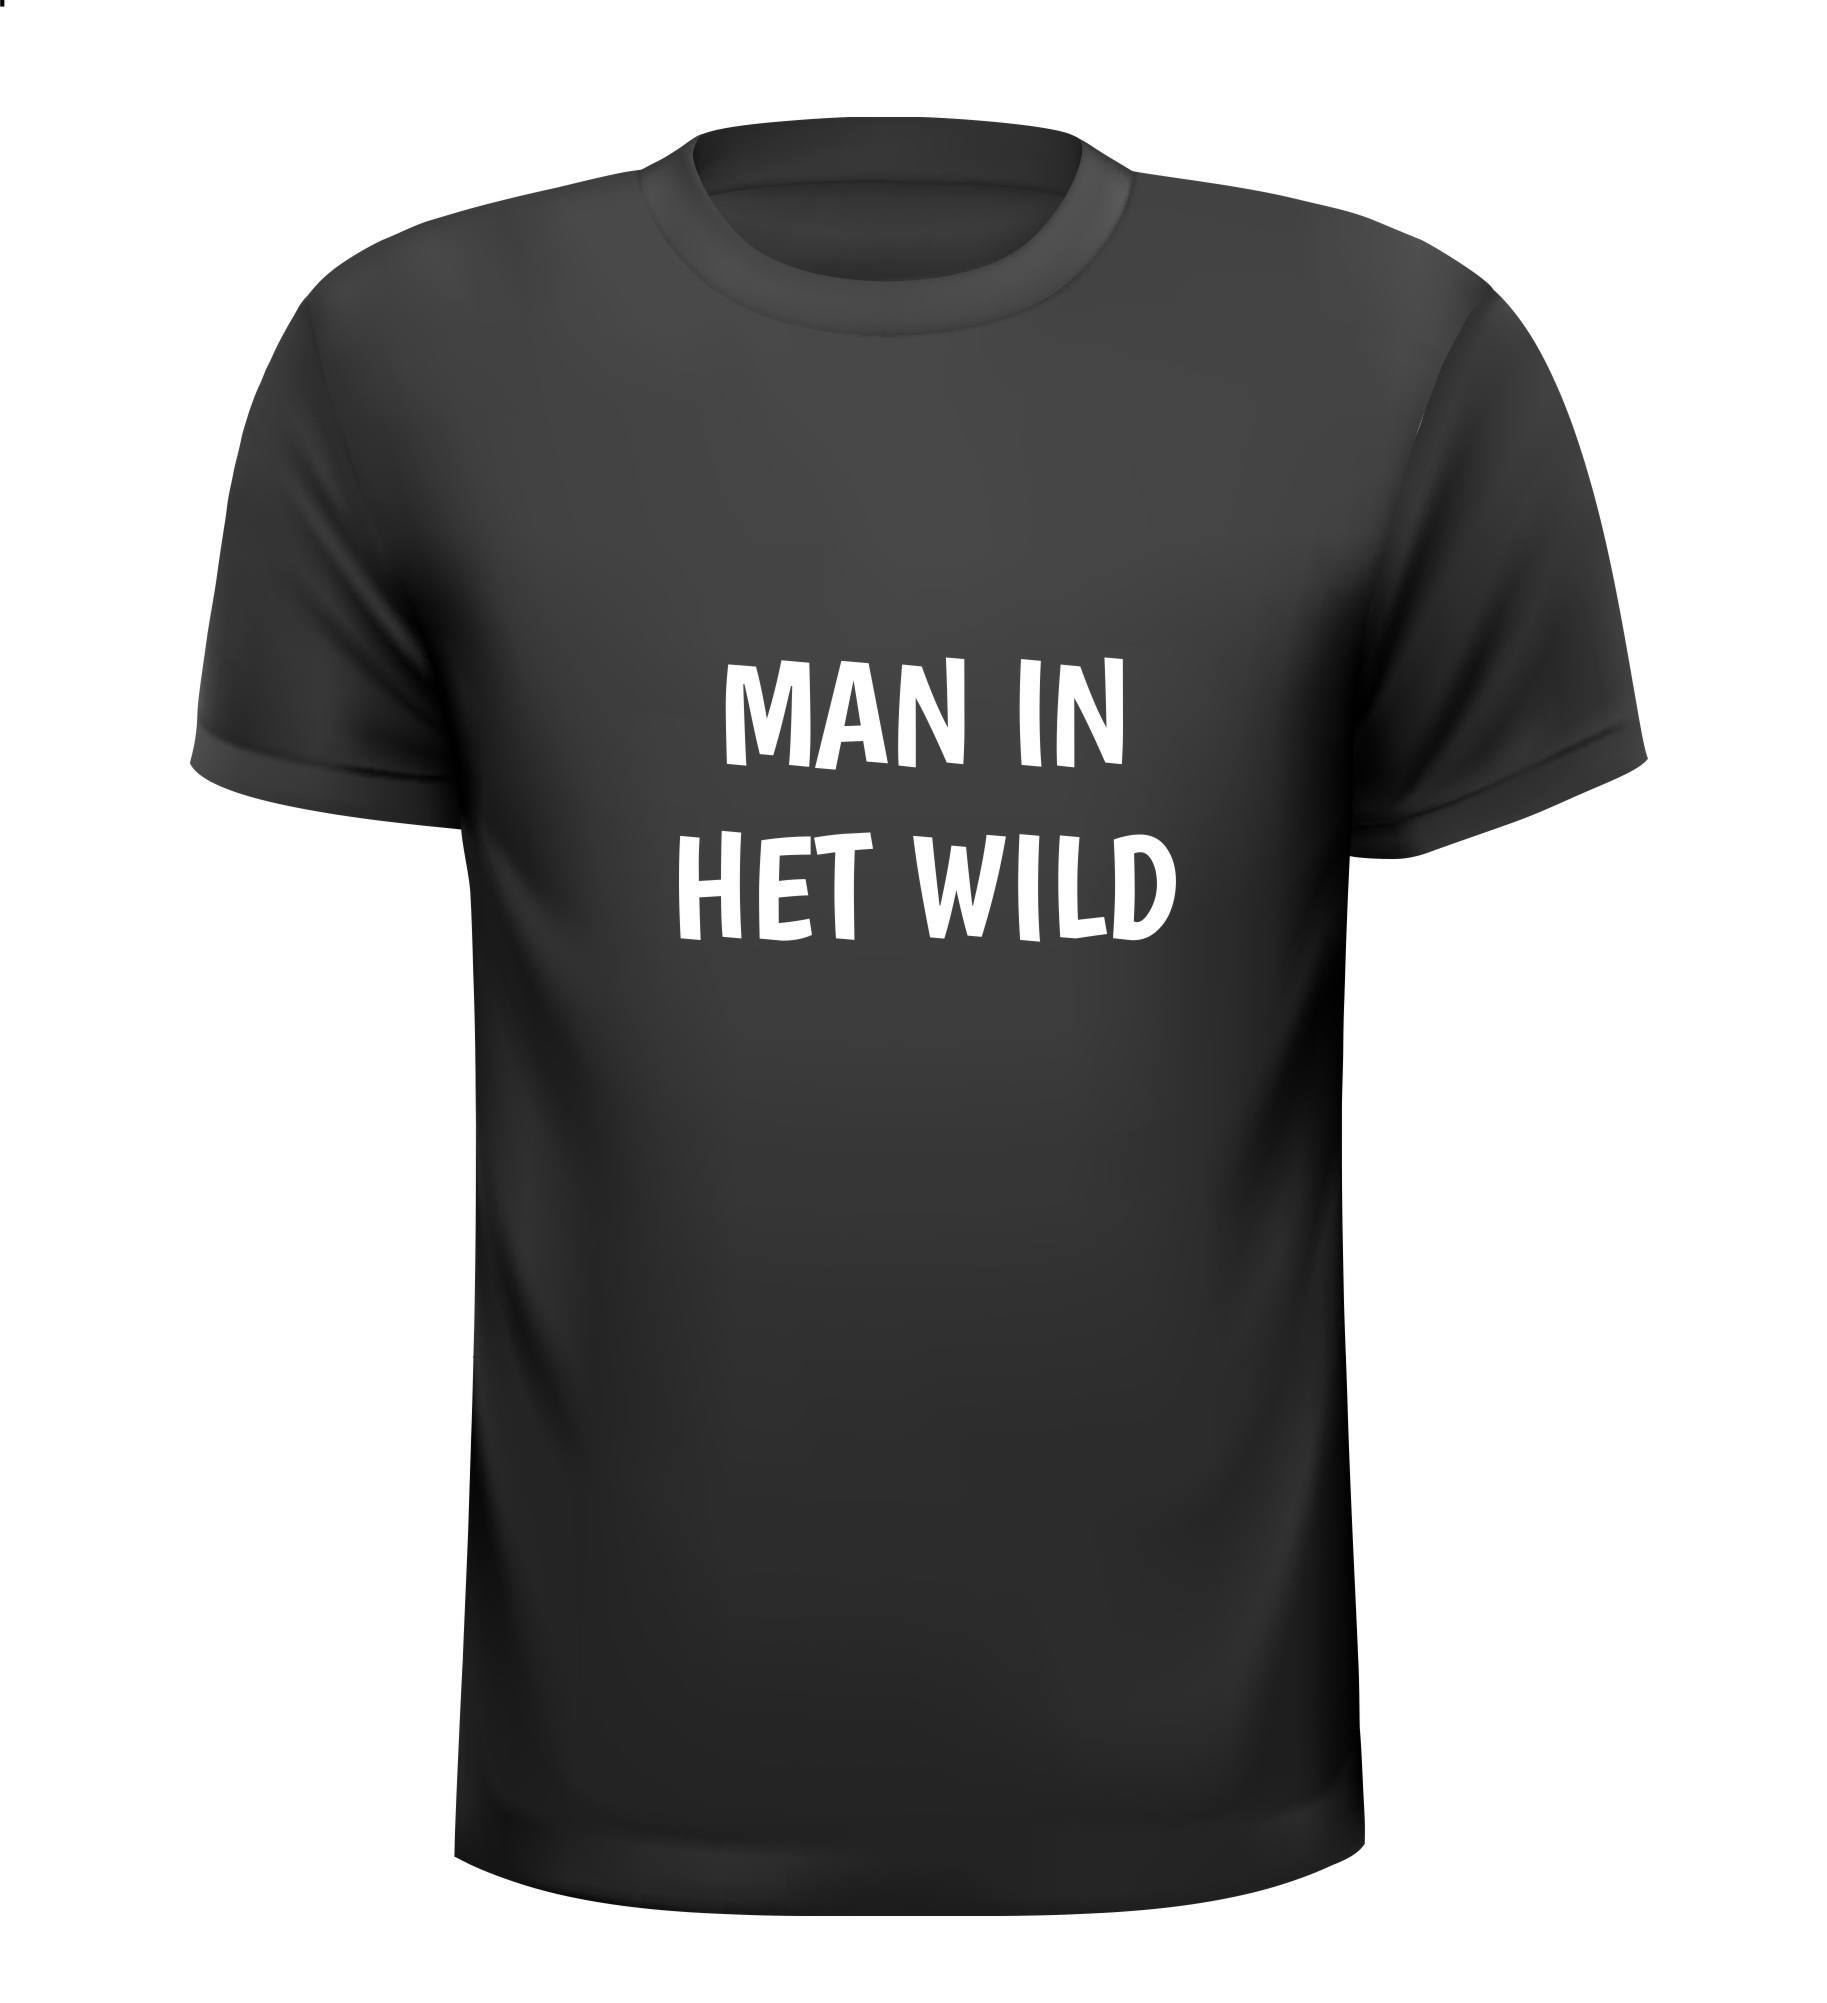 Man in het wild T-shirt tekst voor stoere mannen